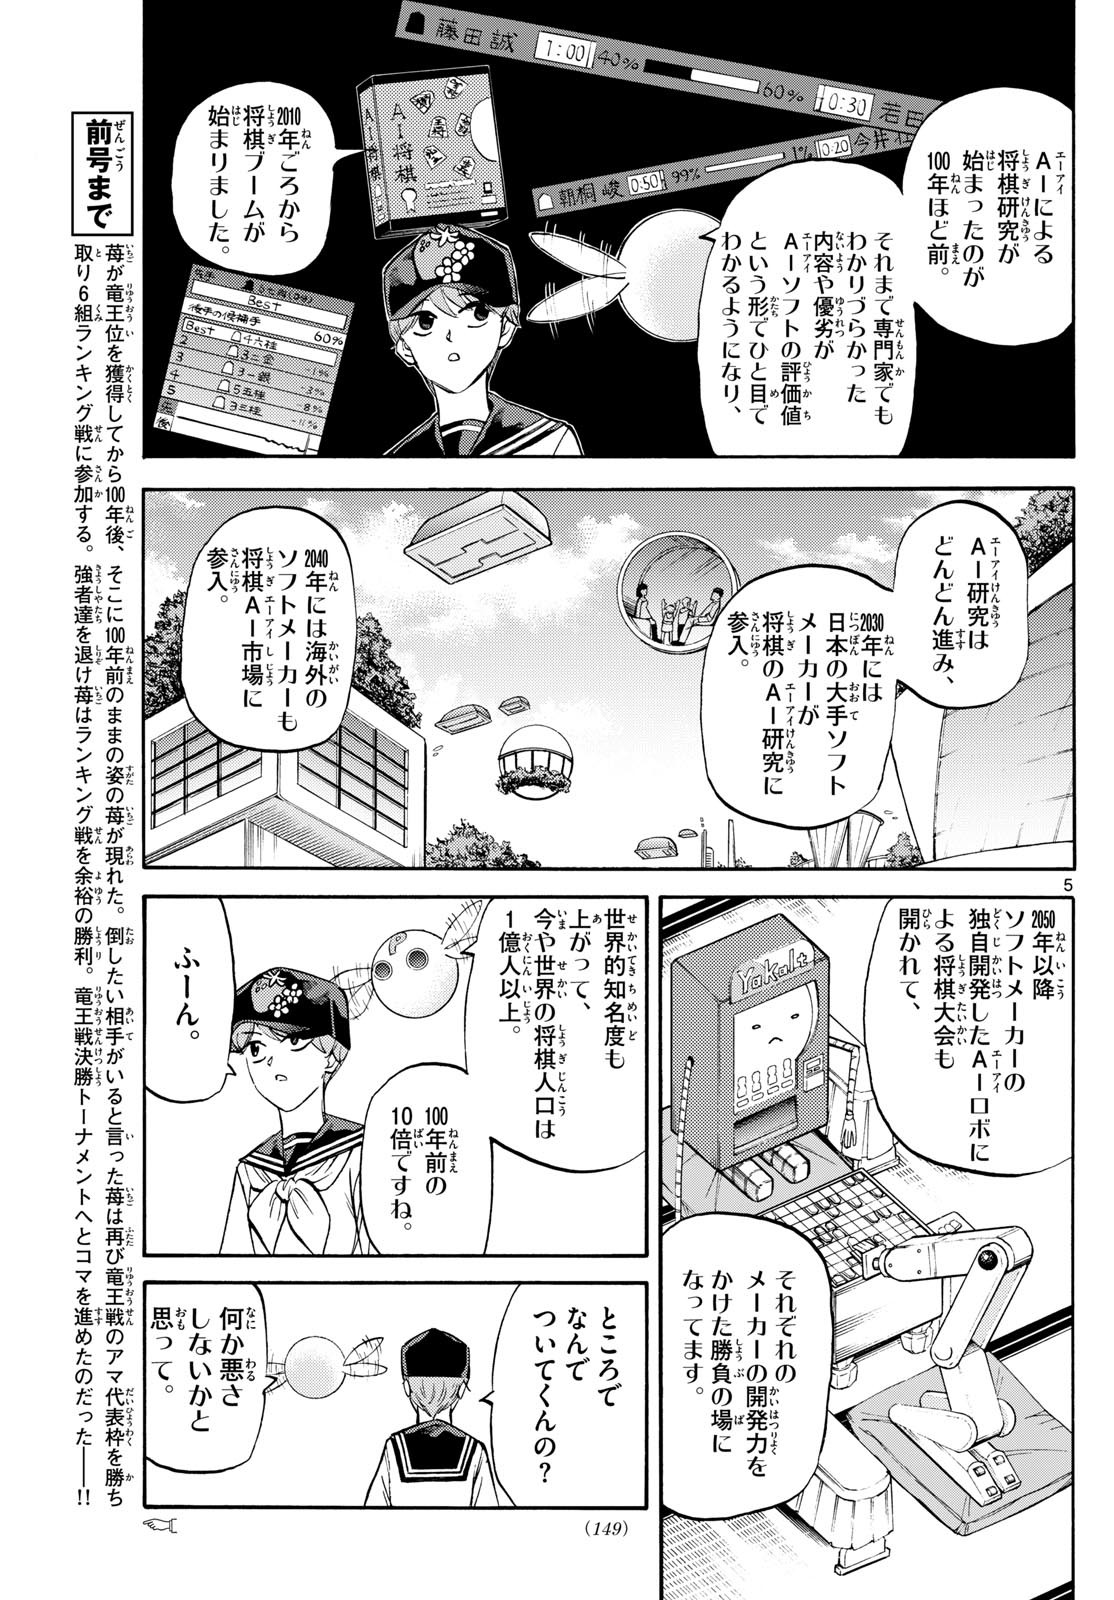 Ryu-to-Ichigo - Chapter 195 - Page 5